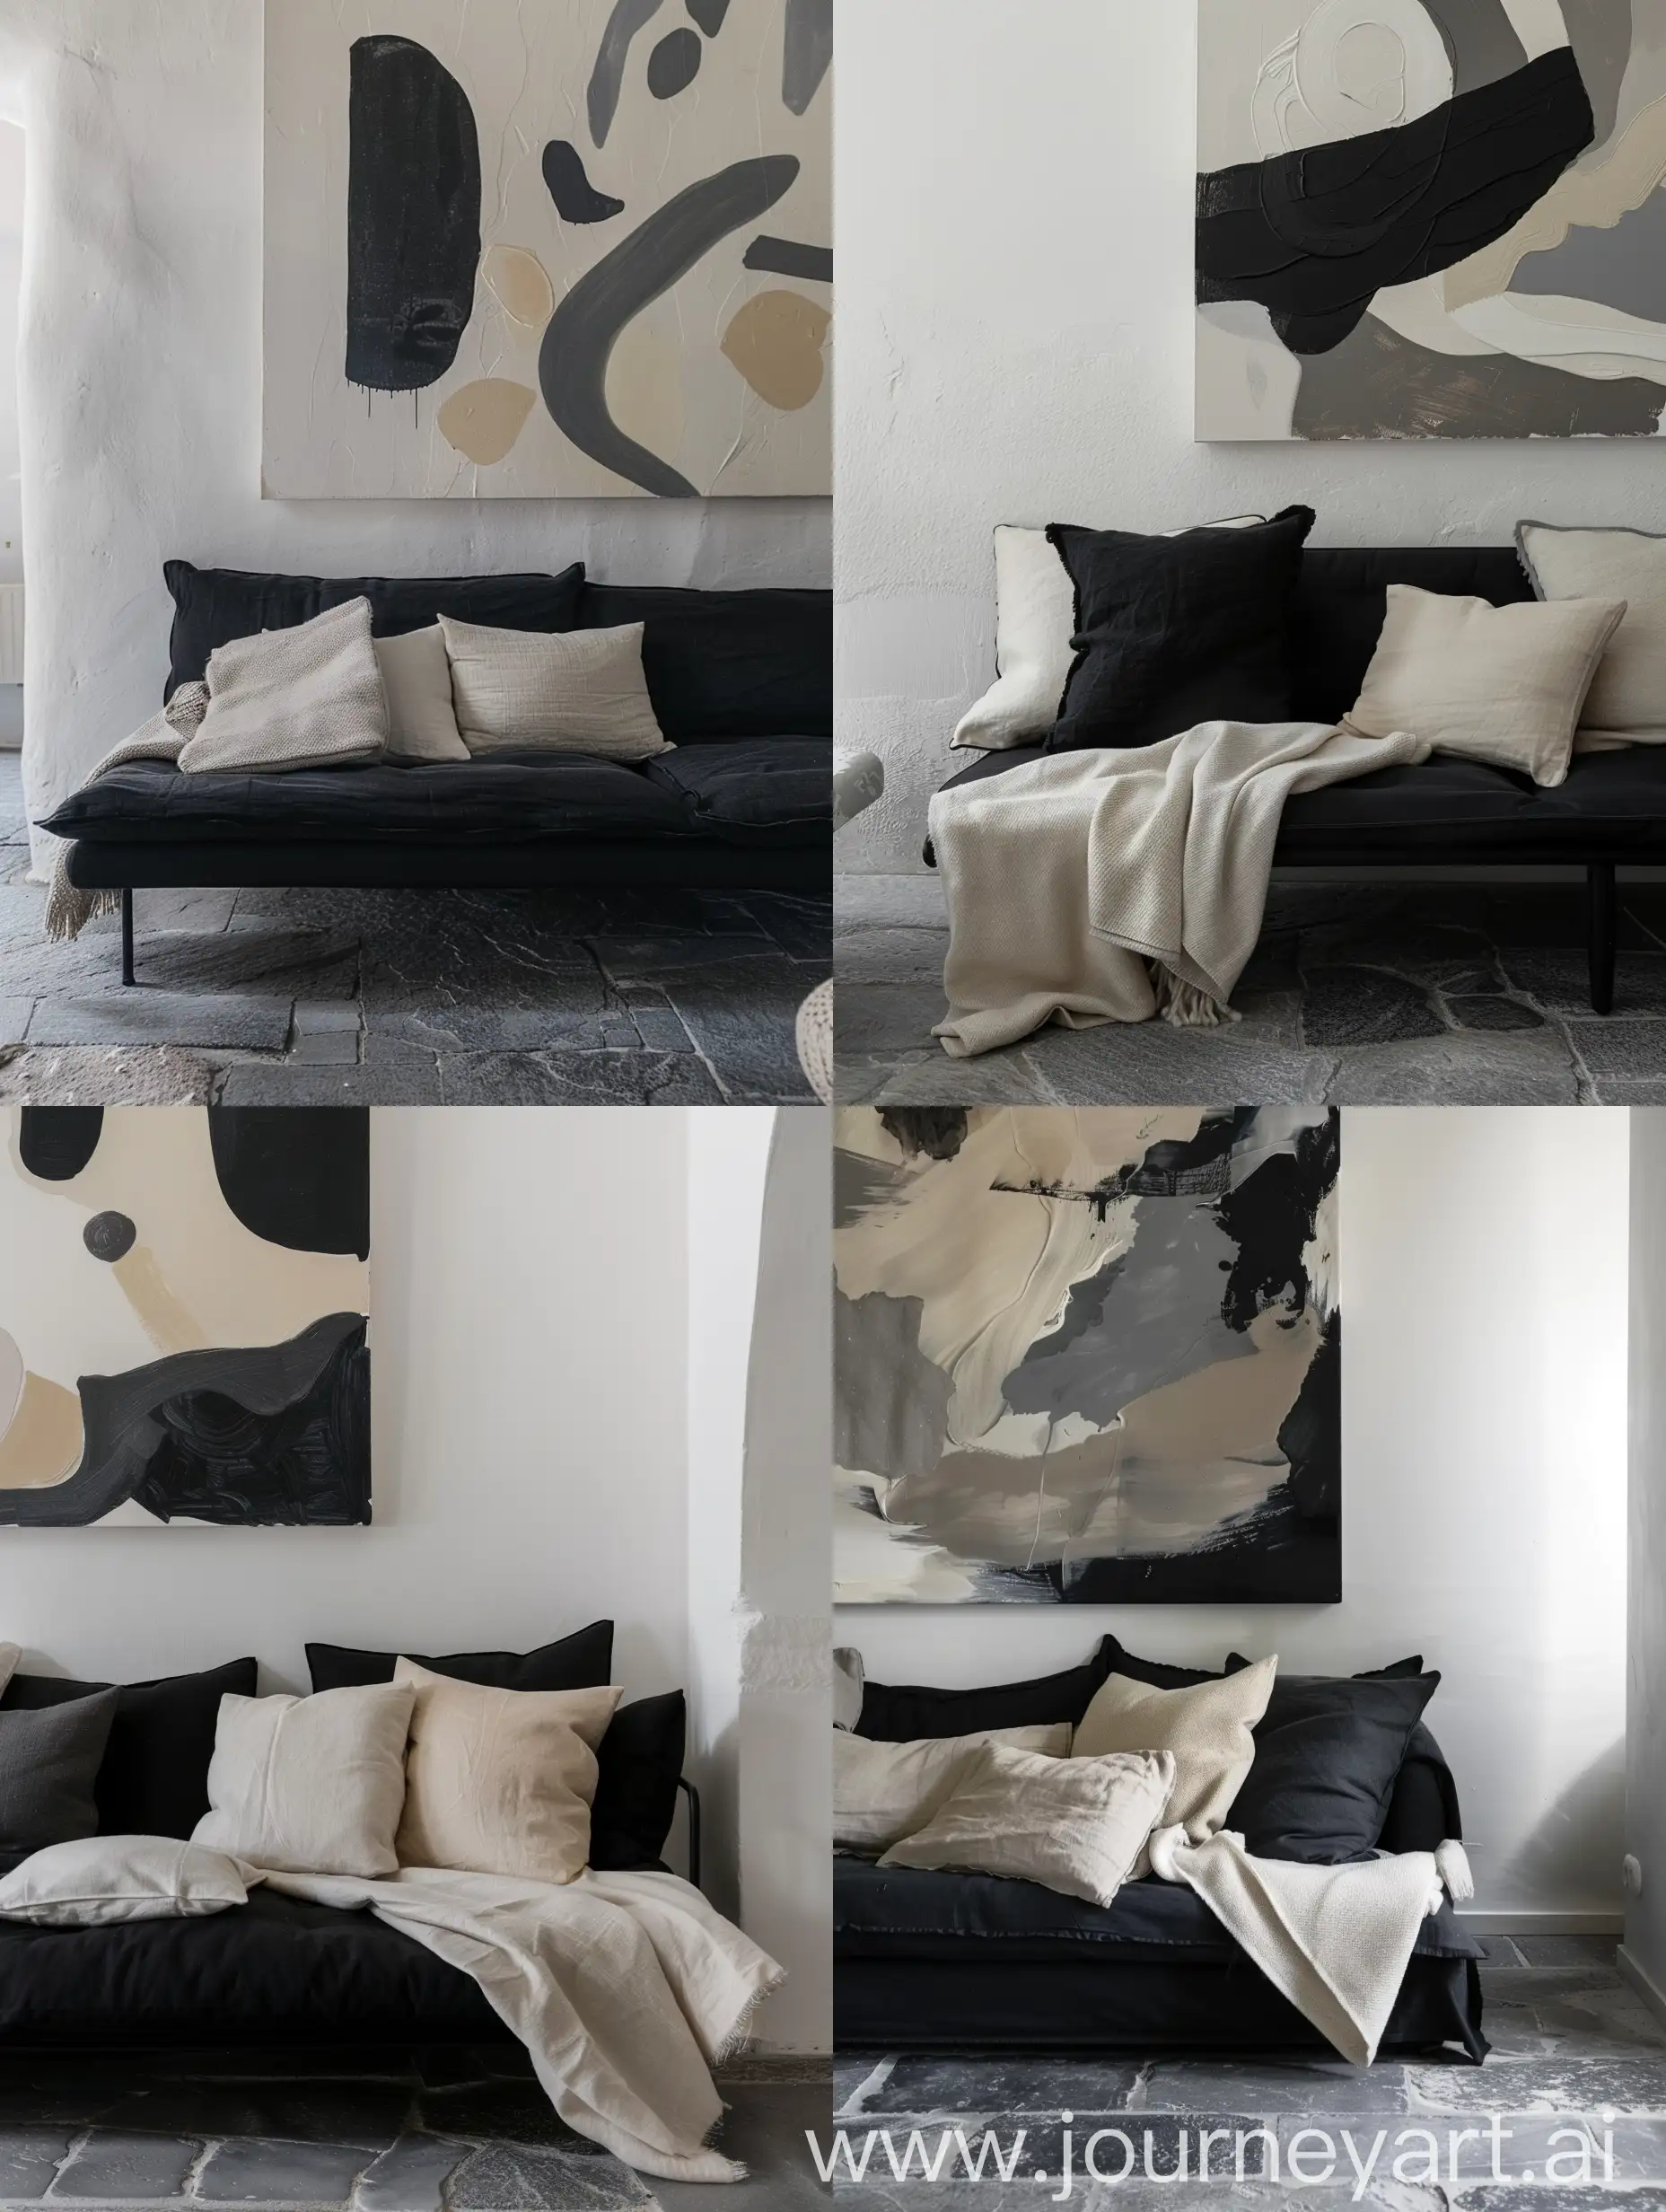 dettaglio di un divano nero con cucini e coperta color crema pavimento gres grigio parete bianca liscia con quadro astratto grigio nero e crema